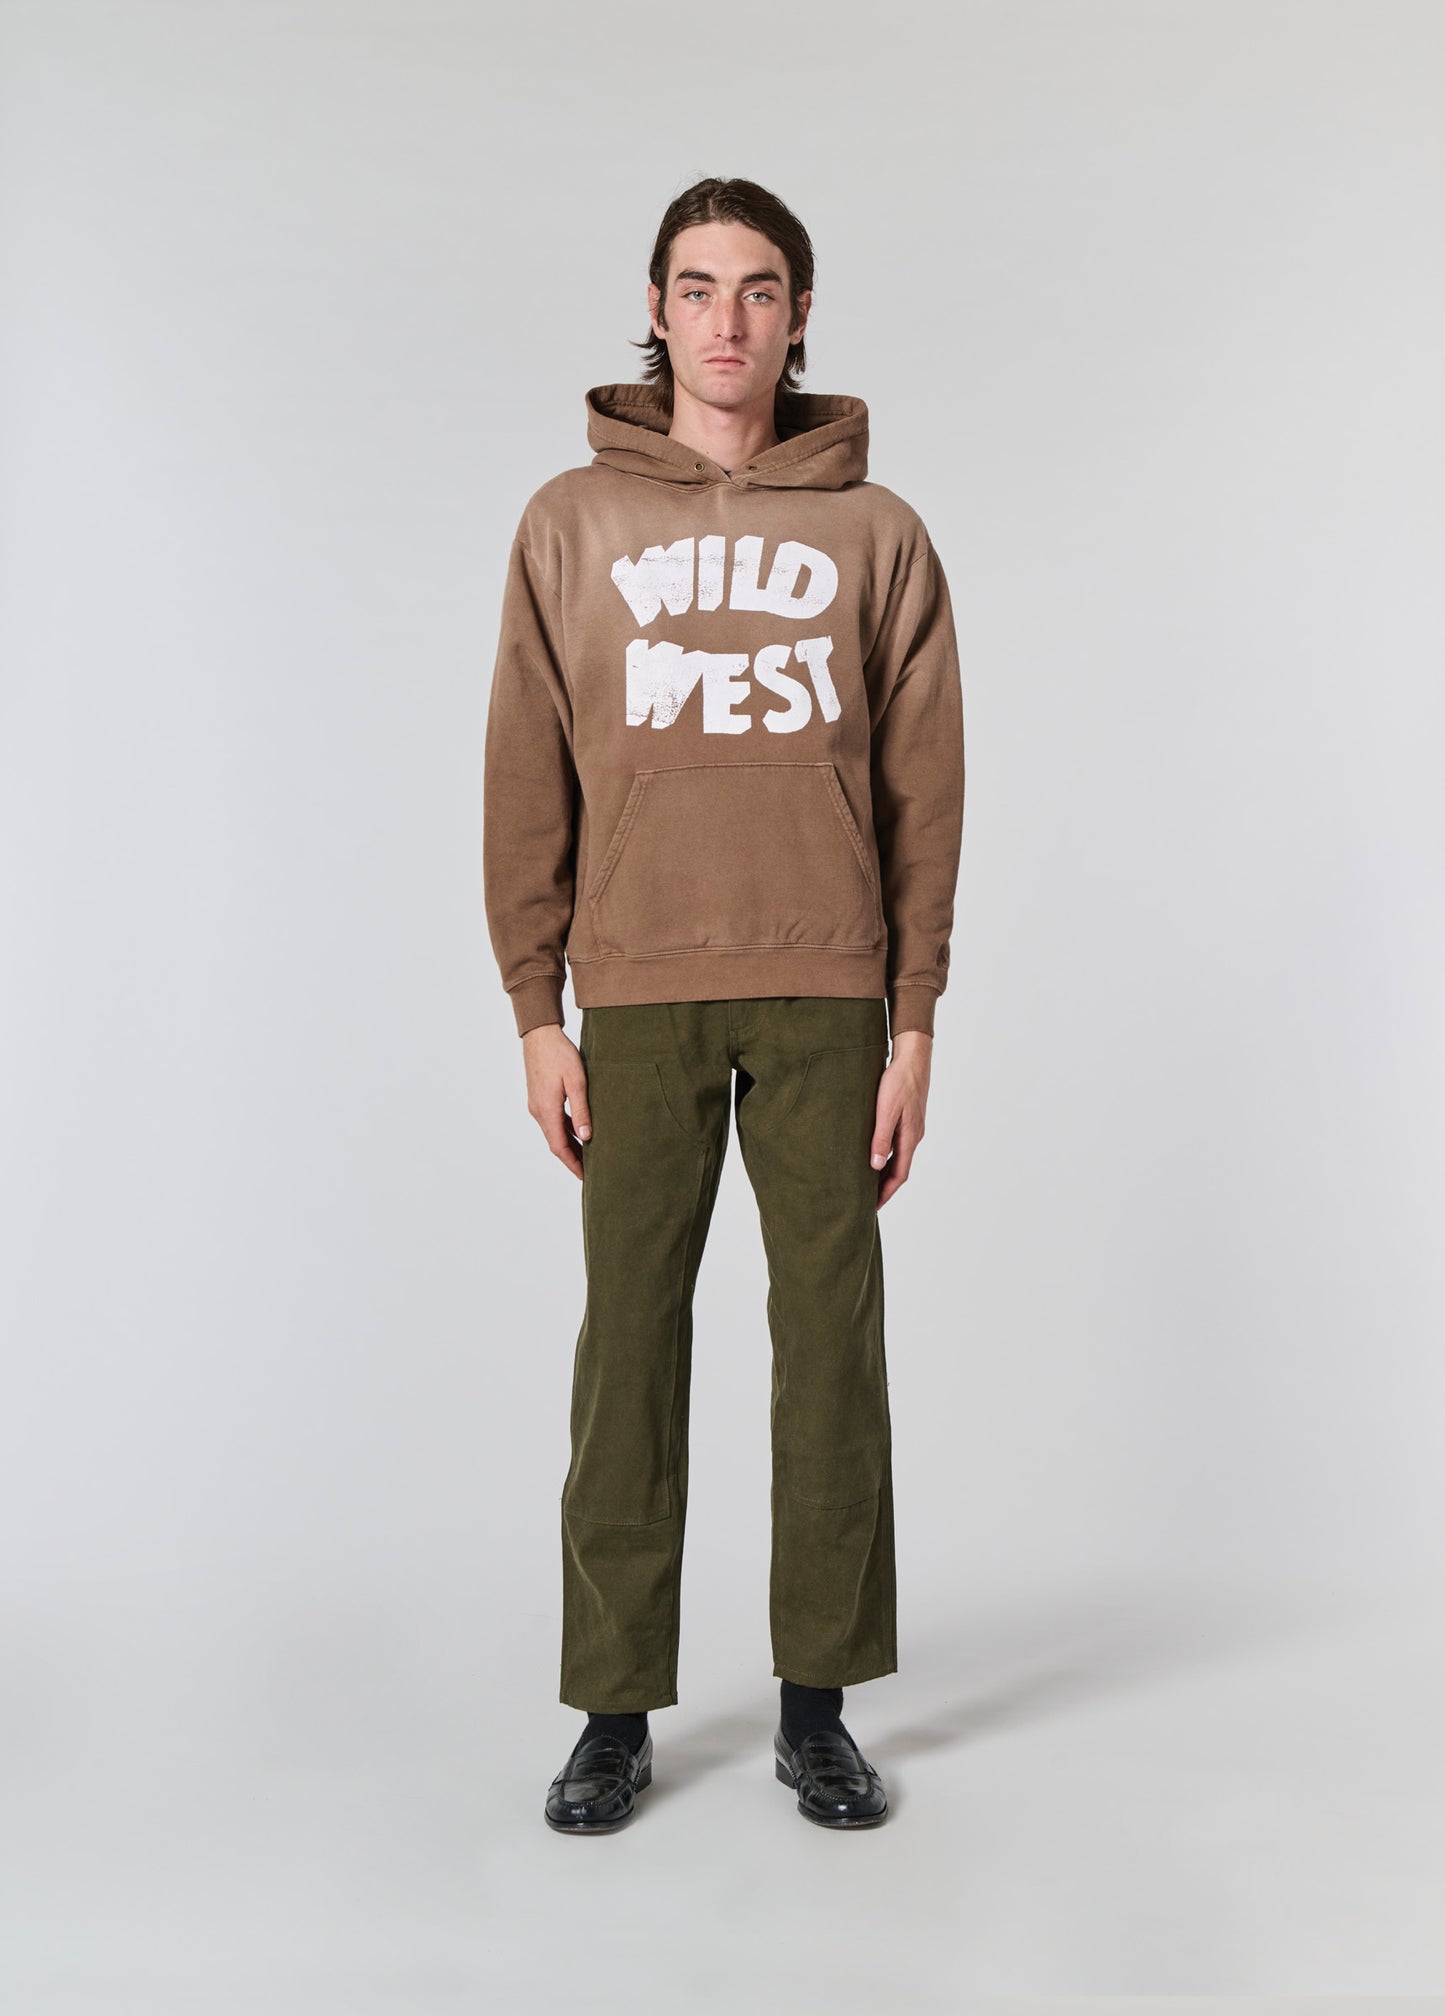 Wild West Hooded Sweatshirt | Mustang Brown